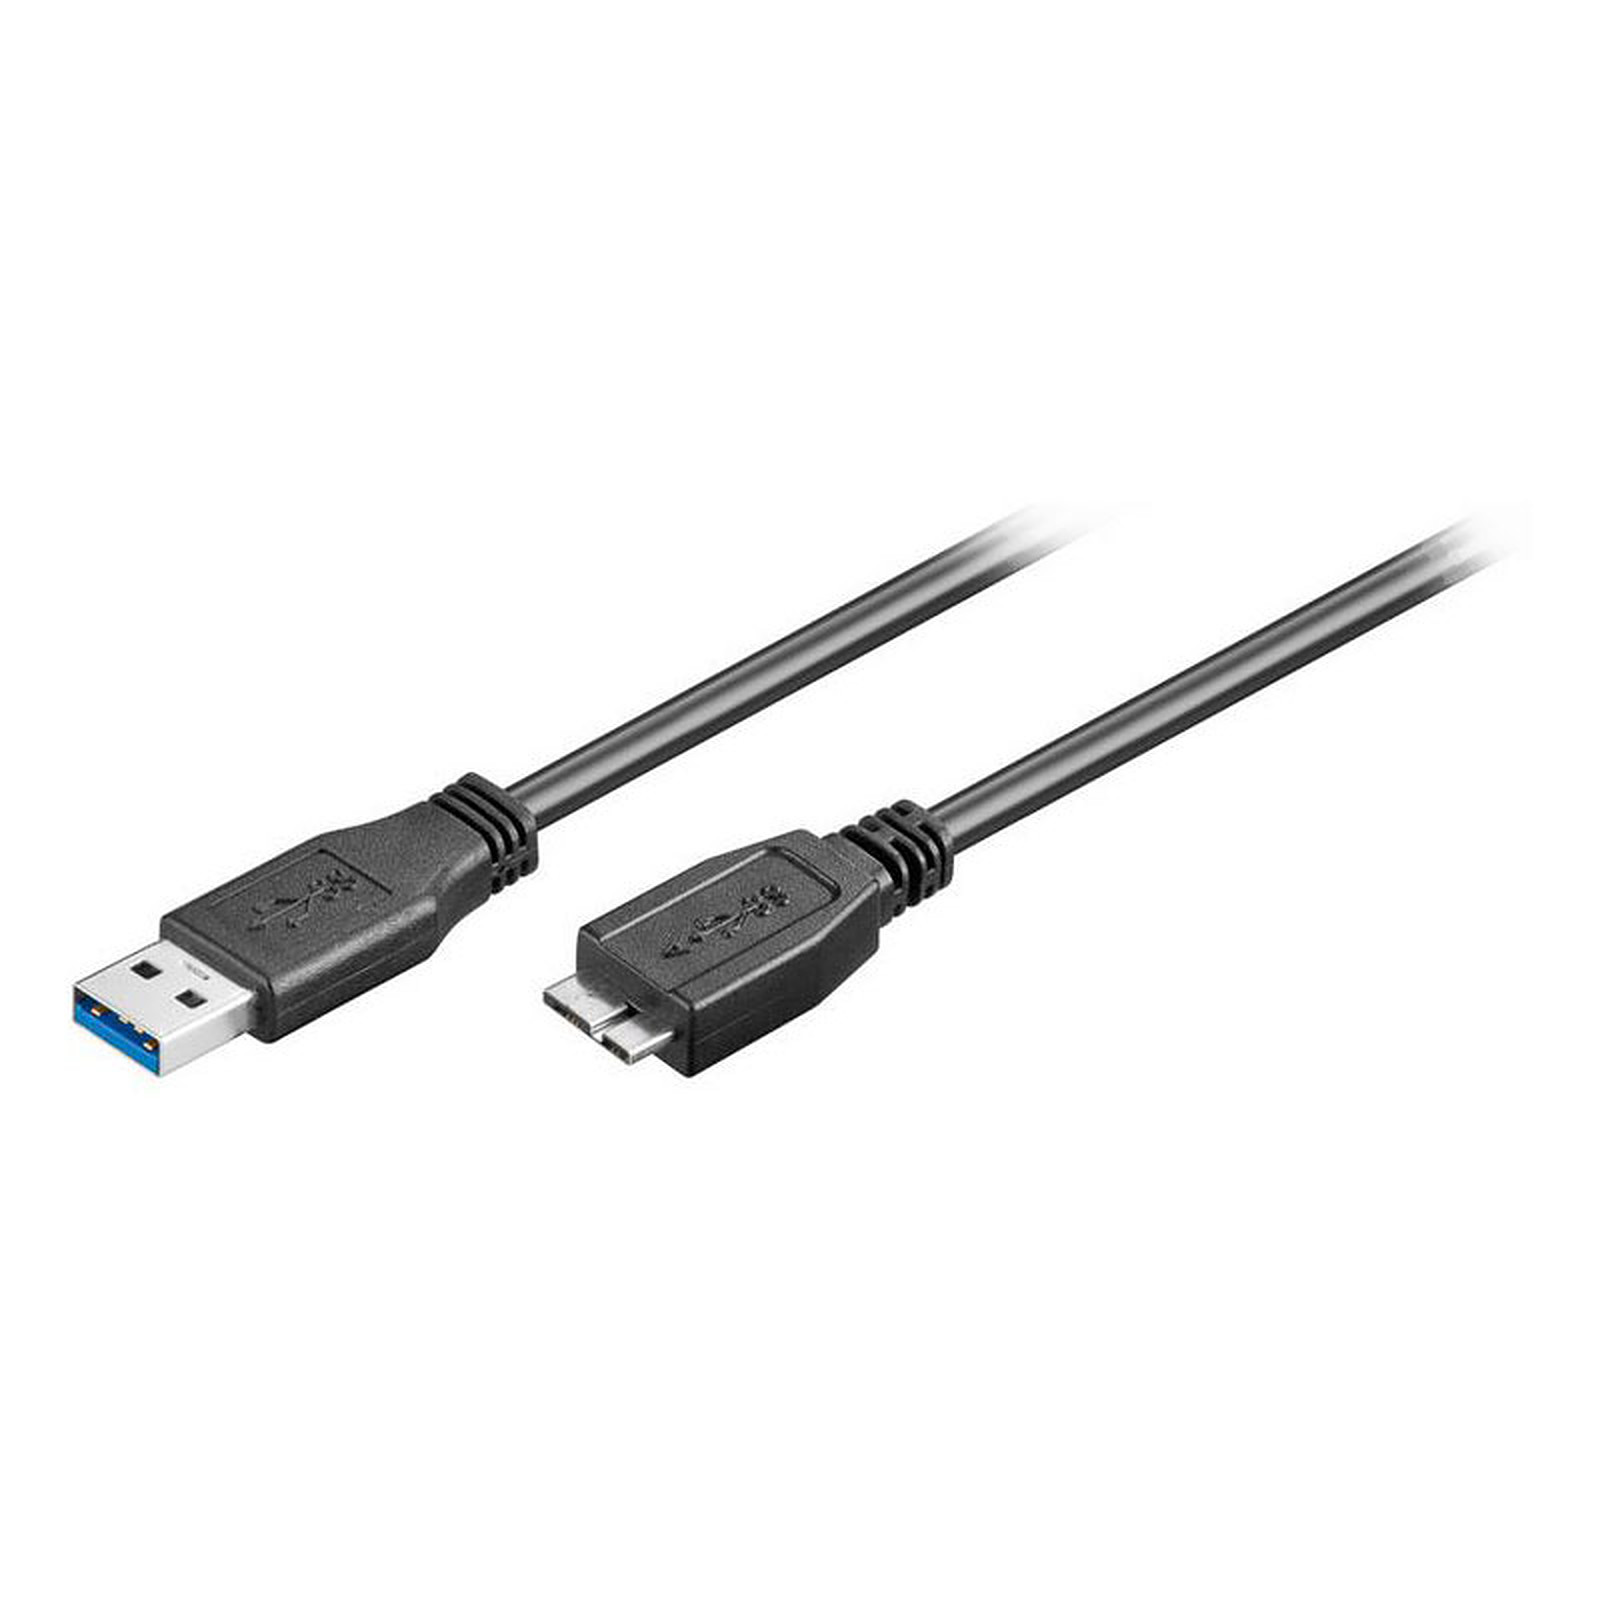 Cable USB 3.0 pour peripherique micro USB (1 mètre) - USB Generique